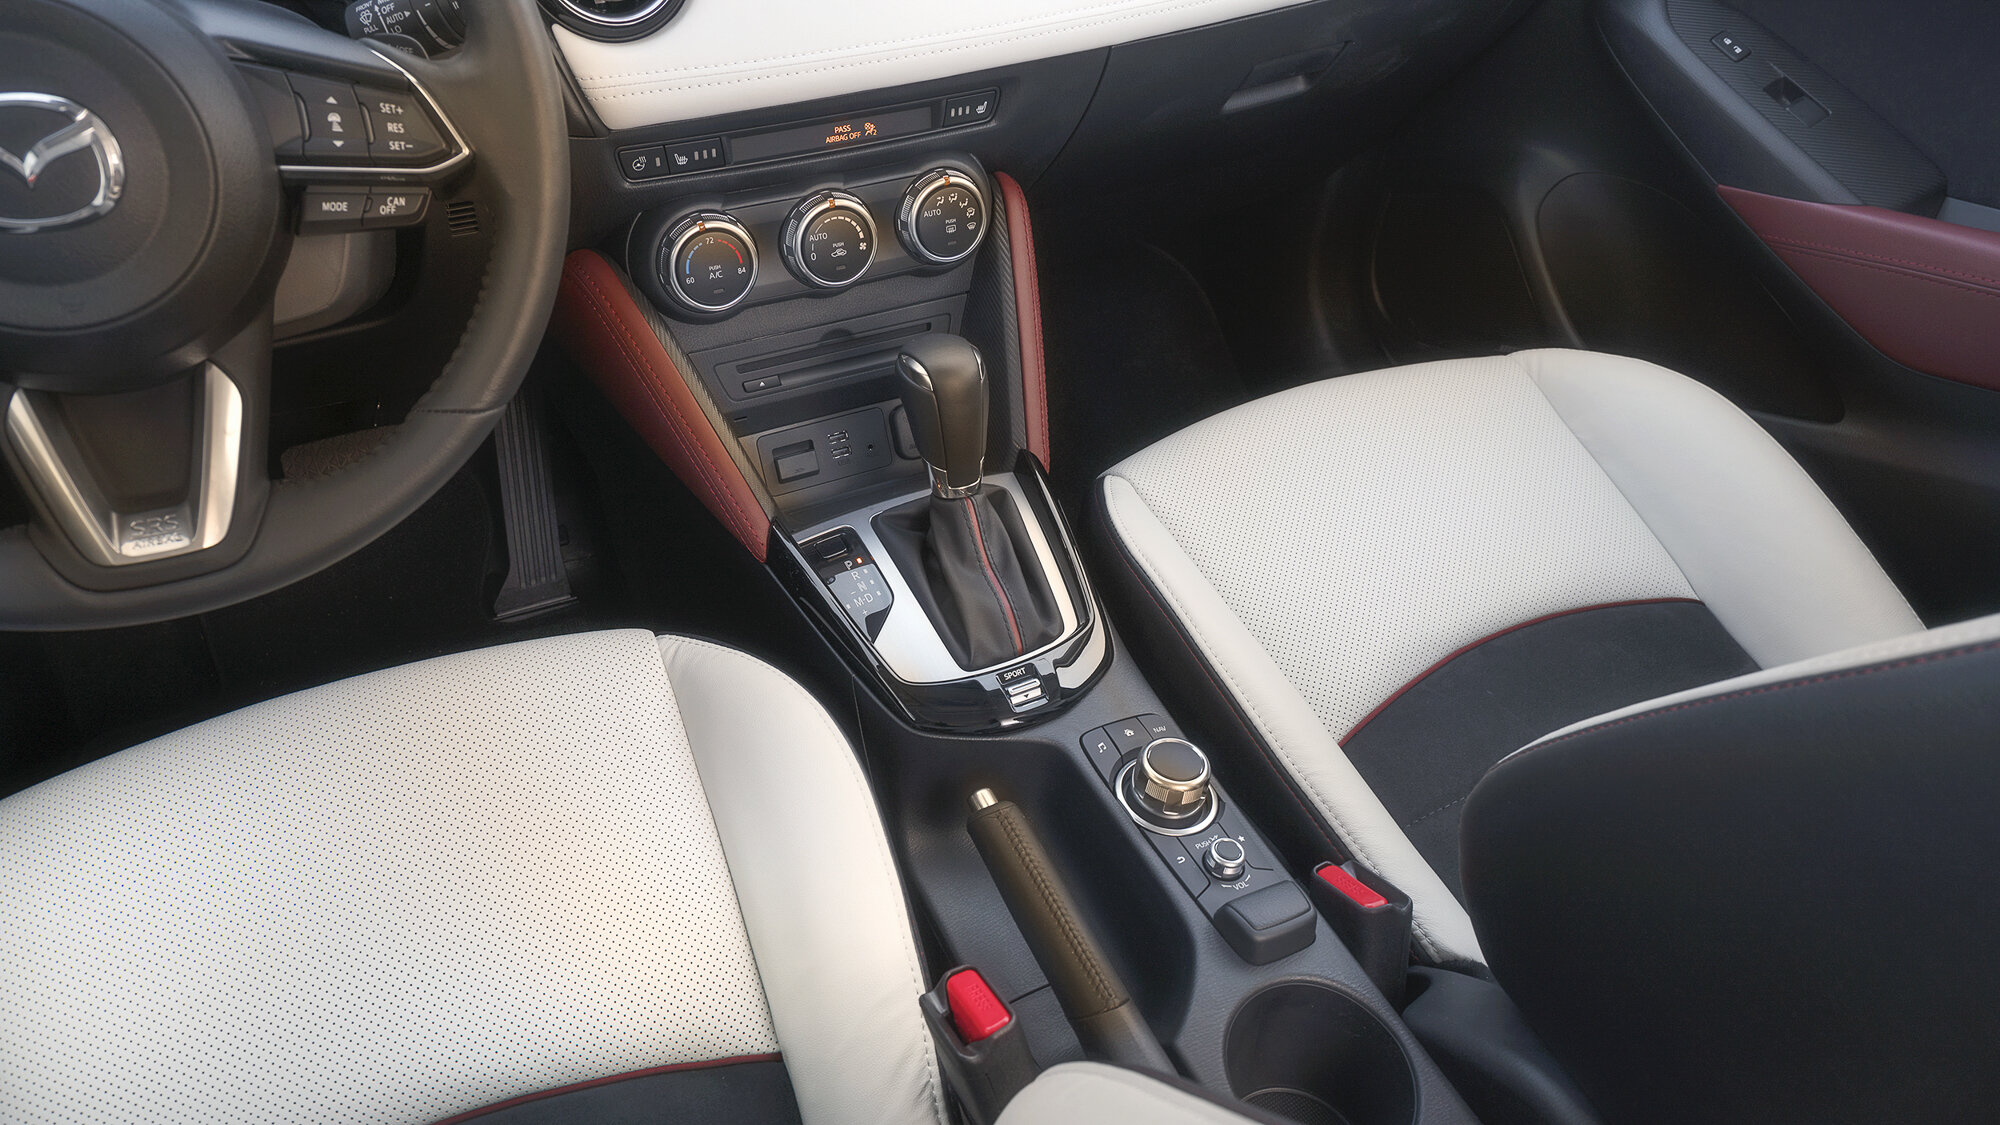  Mazda CX-3 Interior 